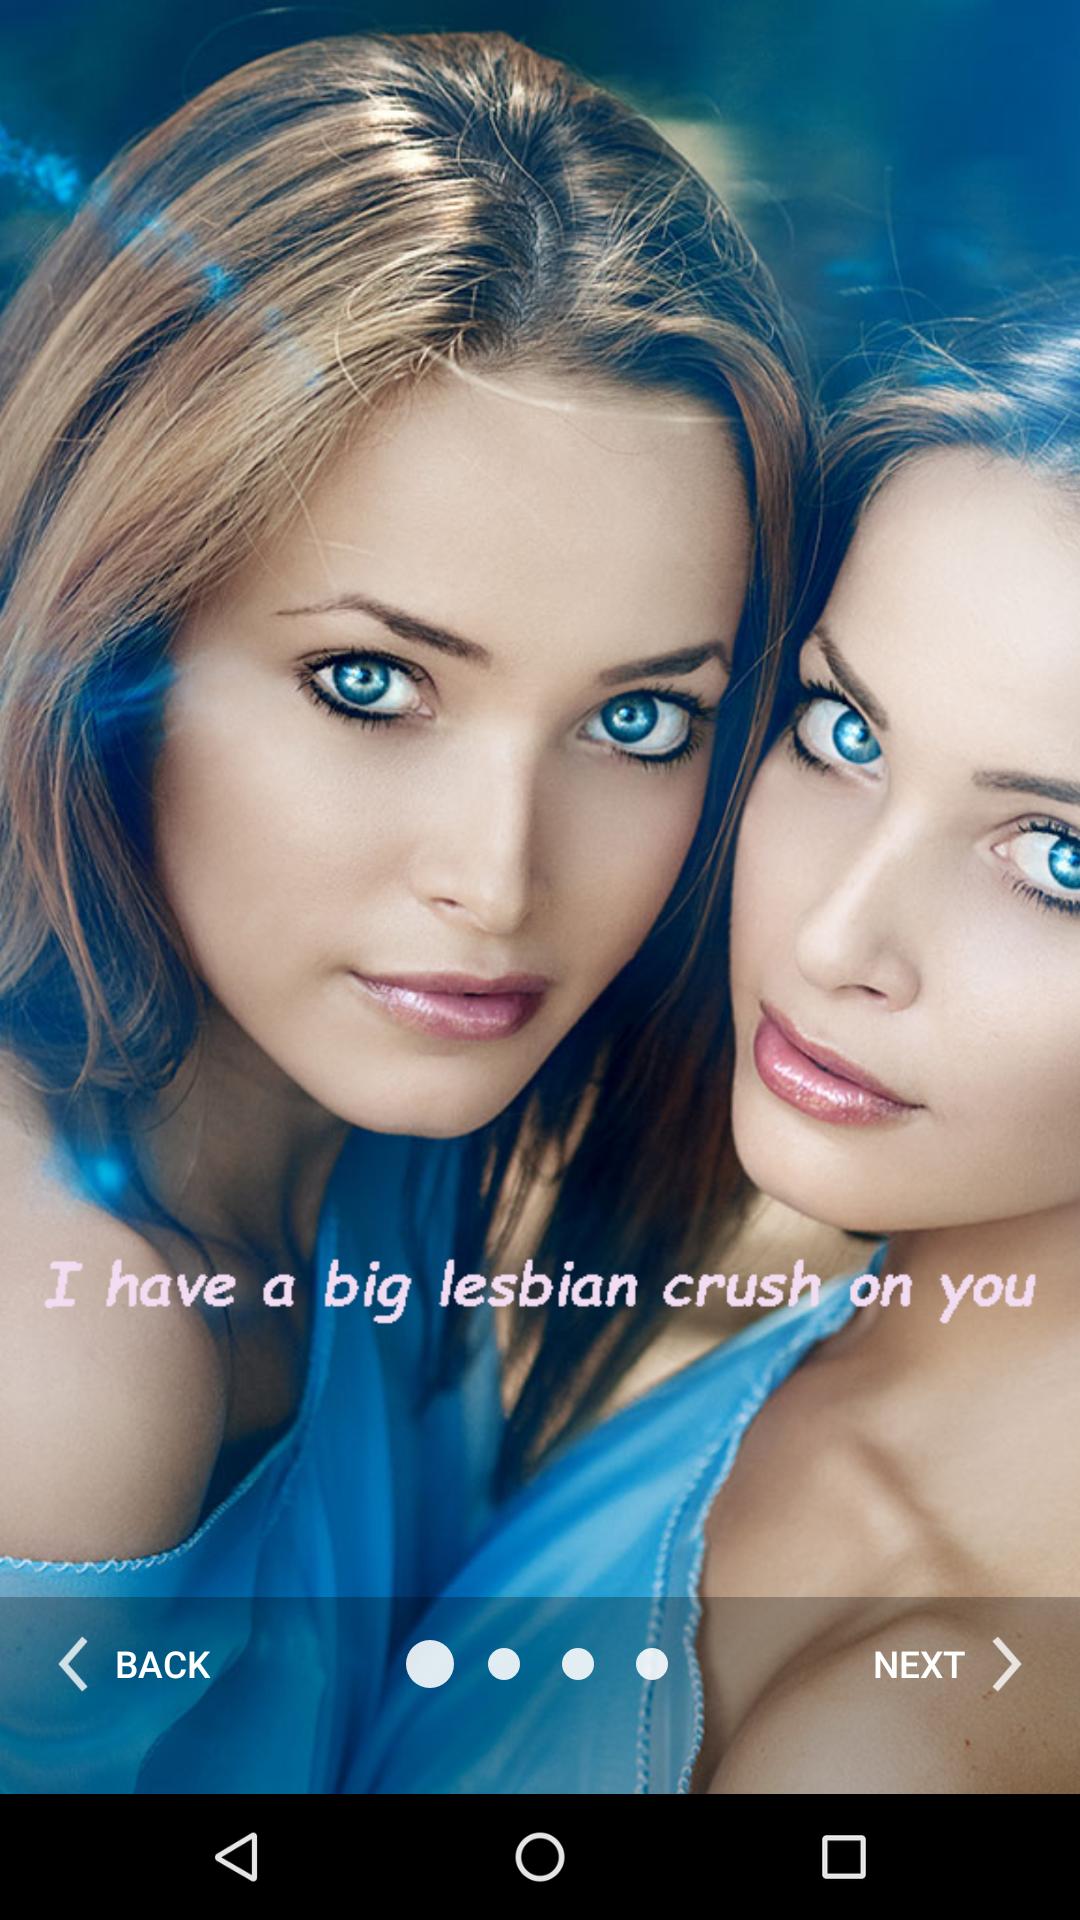 Beliebtes lesbisches Online-Dating